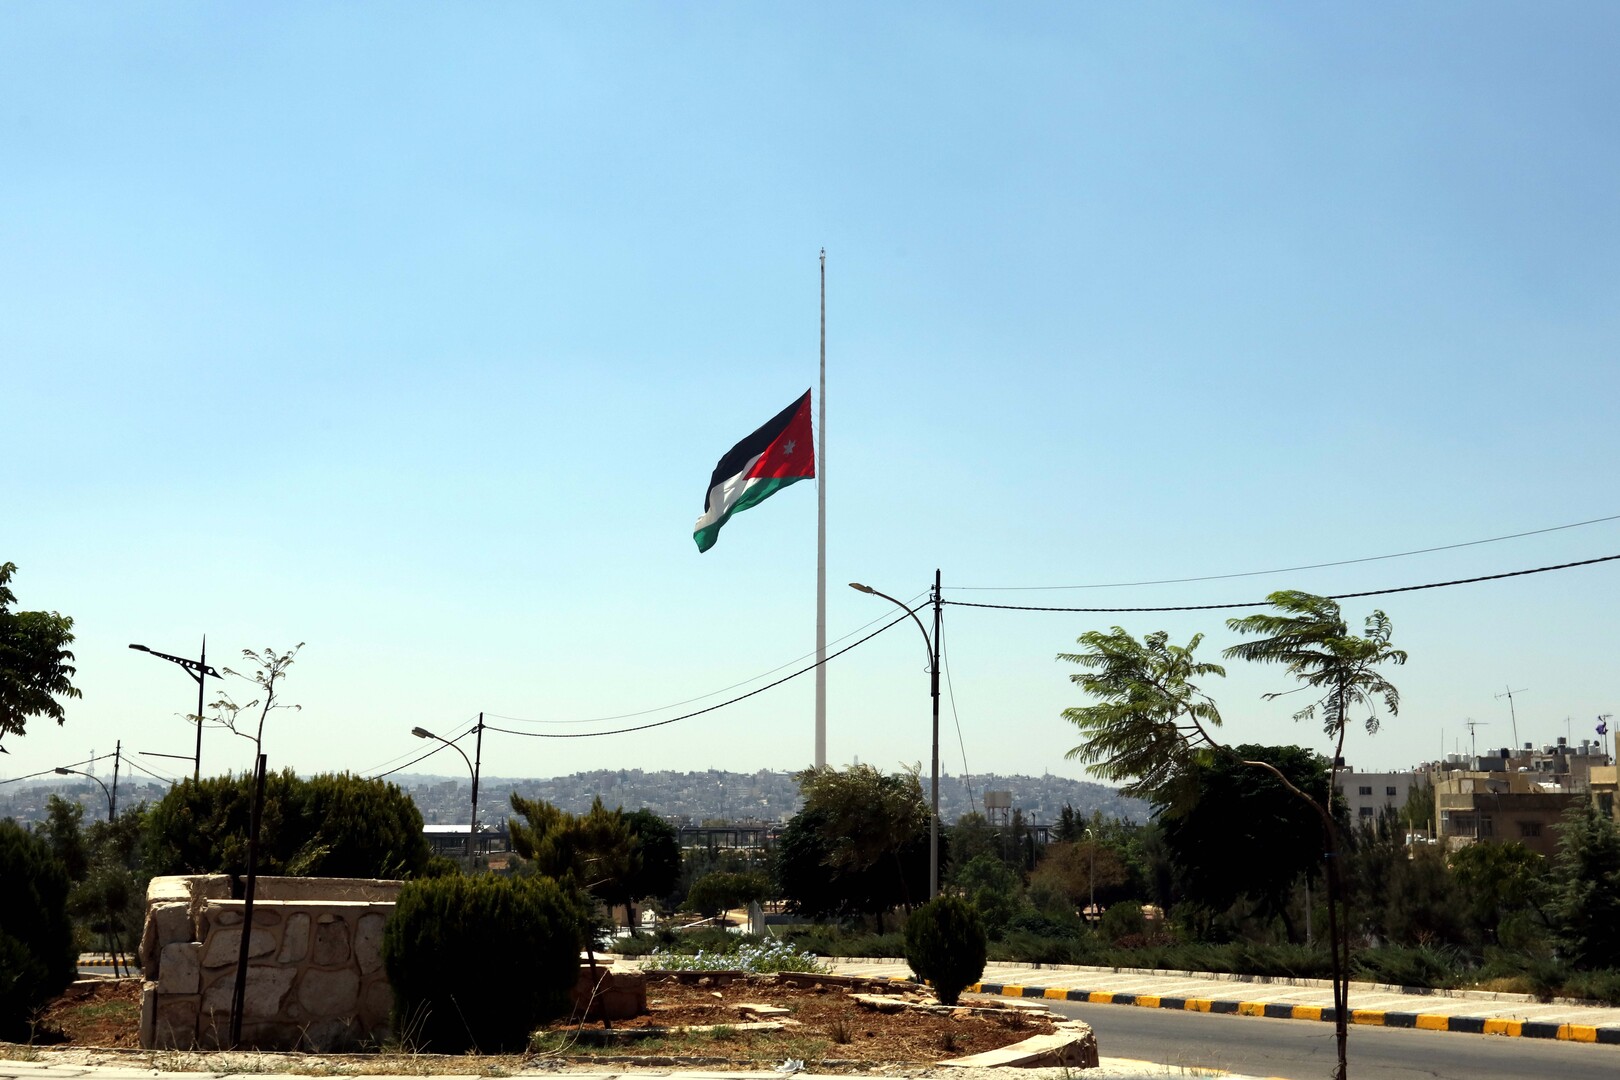 الأردن: مطالب بإلغاء الرسوم الجمركية مع سوريا لتسهيل الحركة التجارية والترانزيت بين البلدين